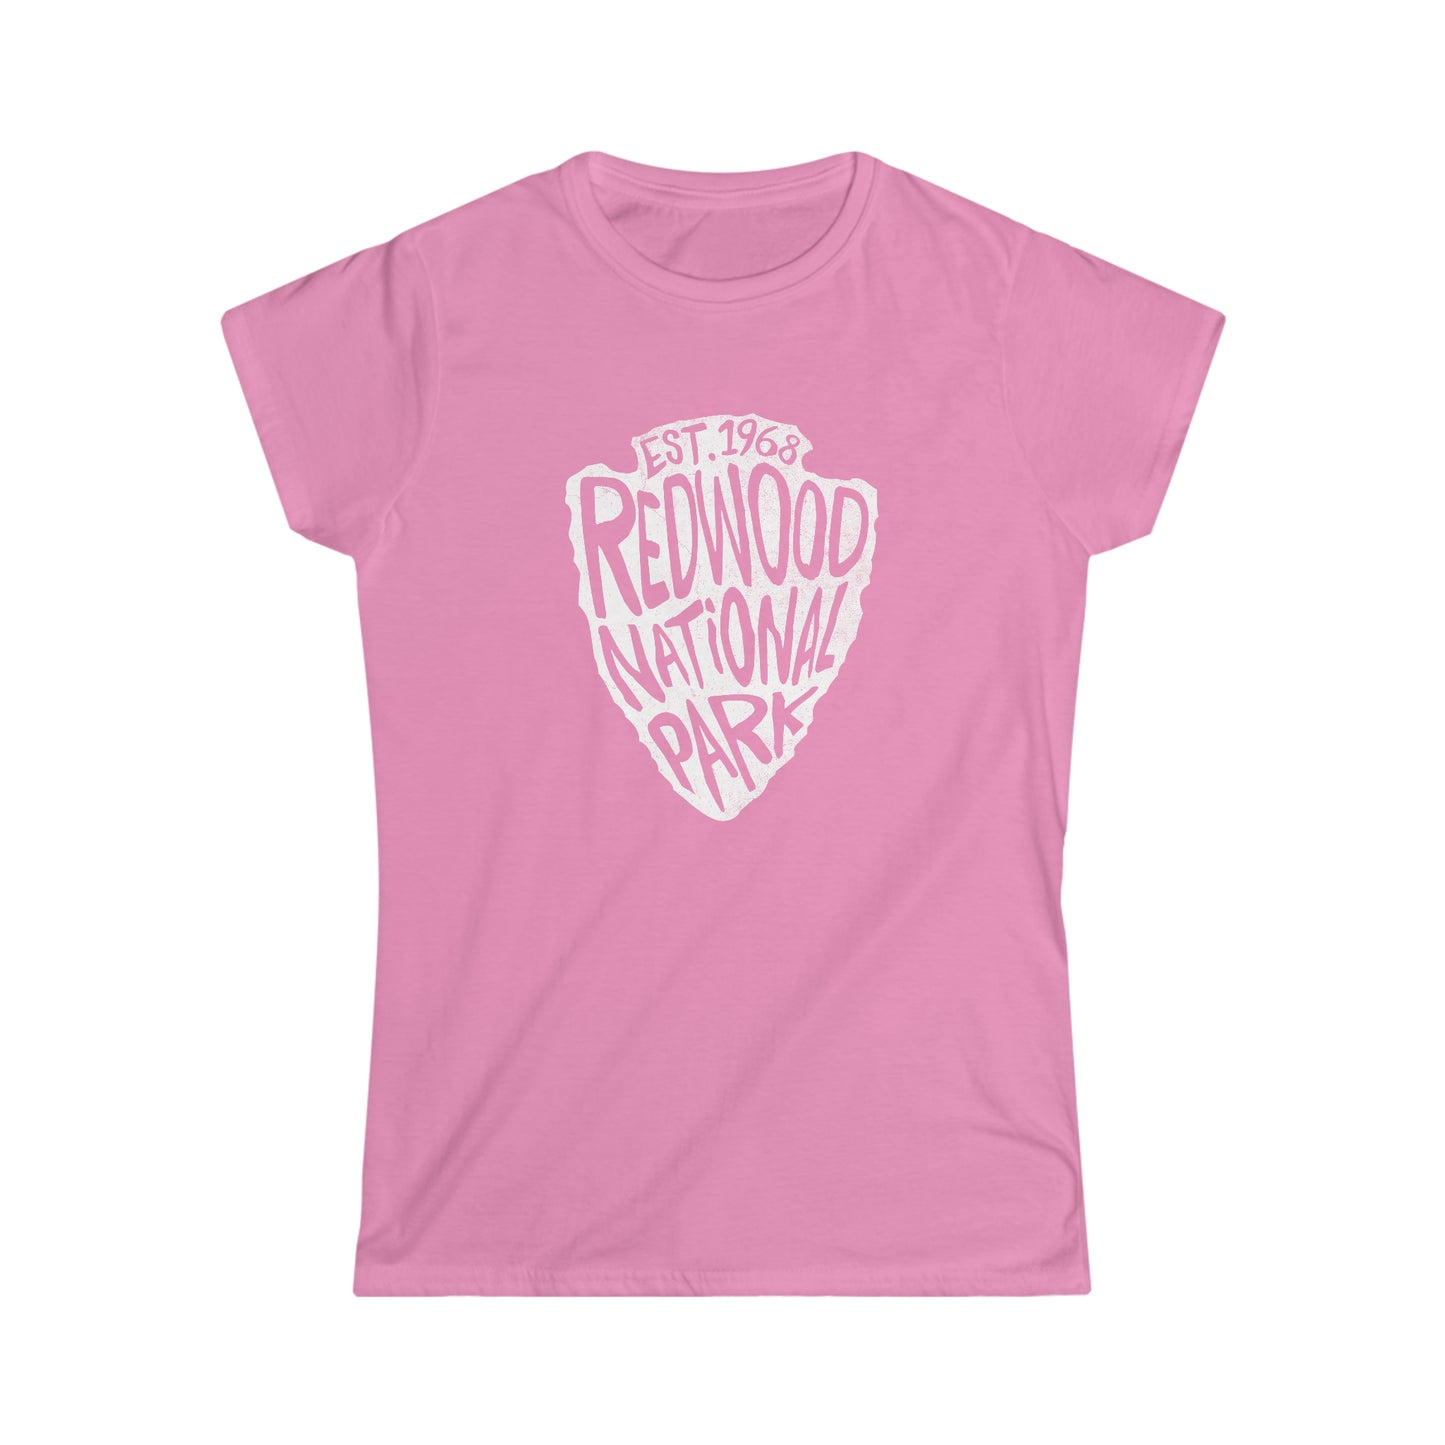 Redwood National Park Women's T-Shirt - Arrowhead Design